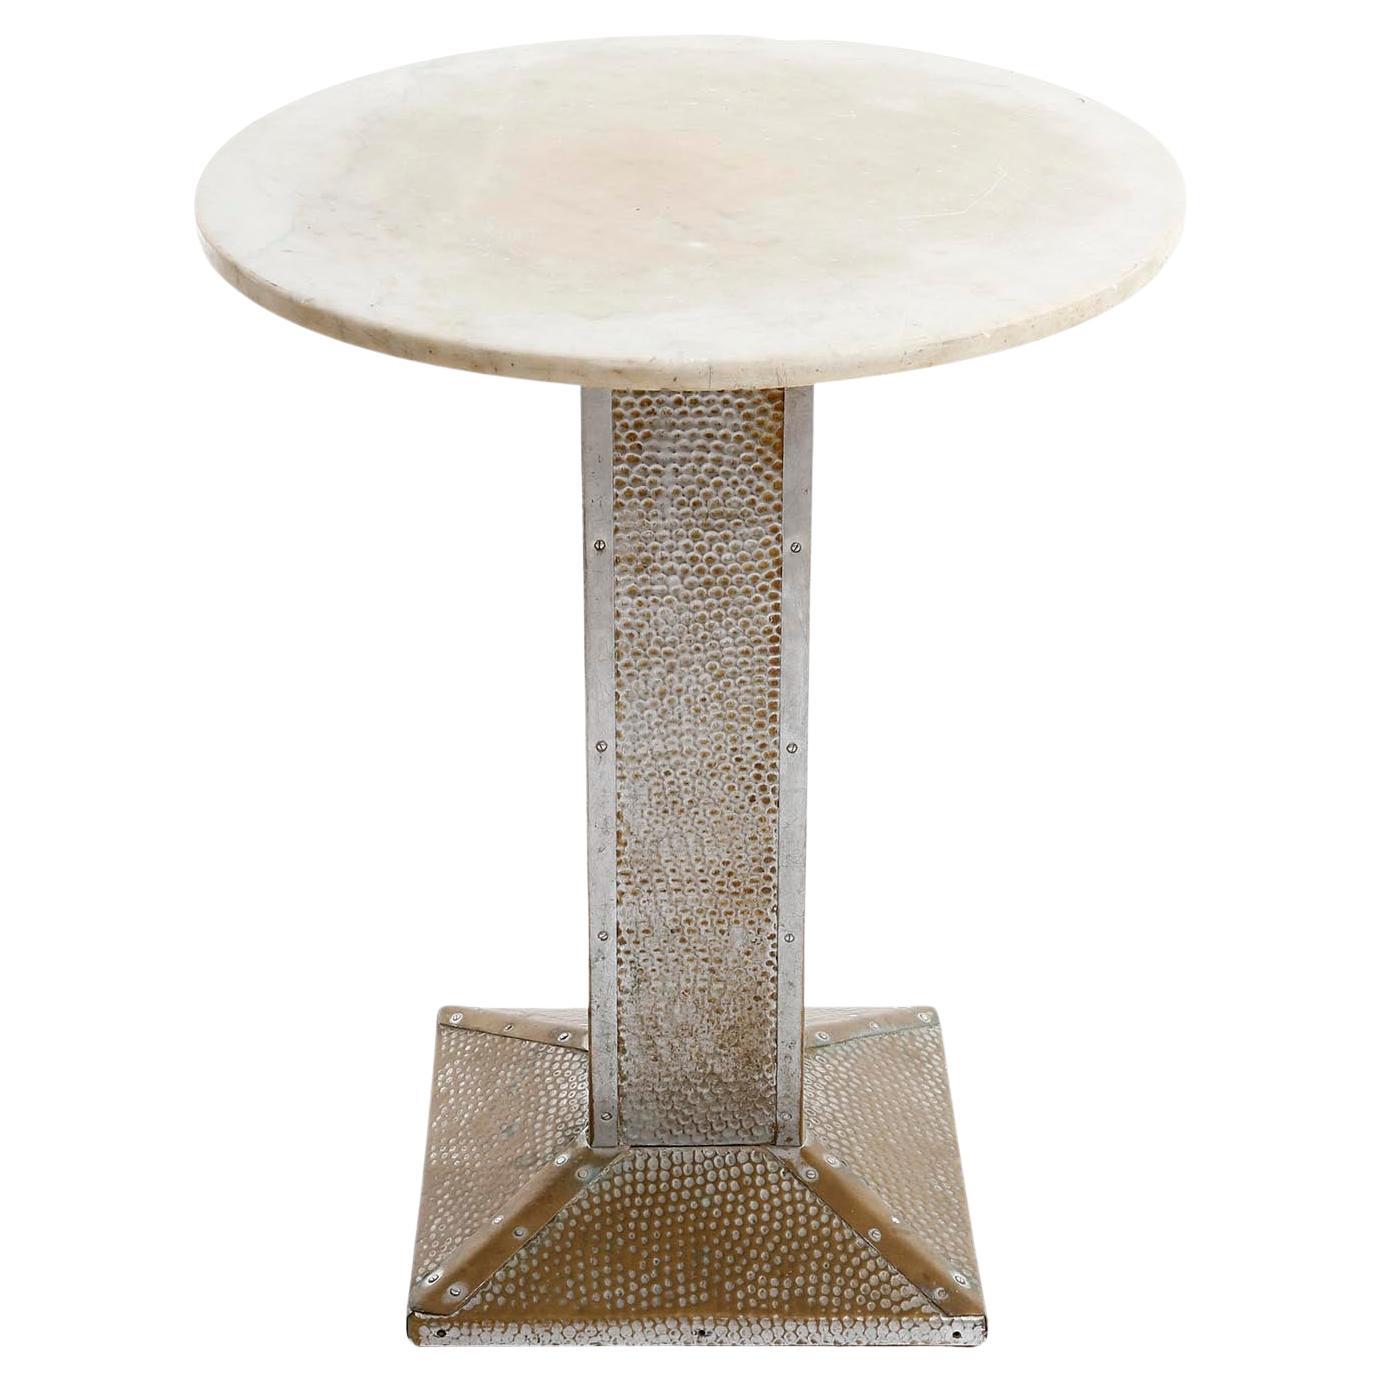 Un guéridon en marbre et un support en laiton martelé et nickelé, fabriqués à Vienne vers 1910.
En partie, le nickelage a disparu et le laiton qui se trouve en dessous est visible. Le nickel, le laiton et le marbre sont très patinés.
La table est